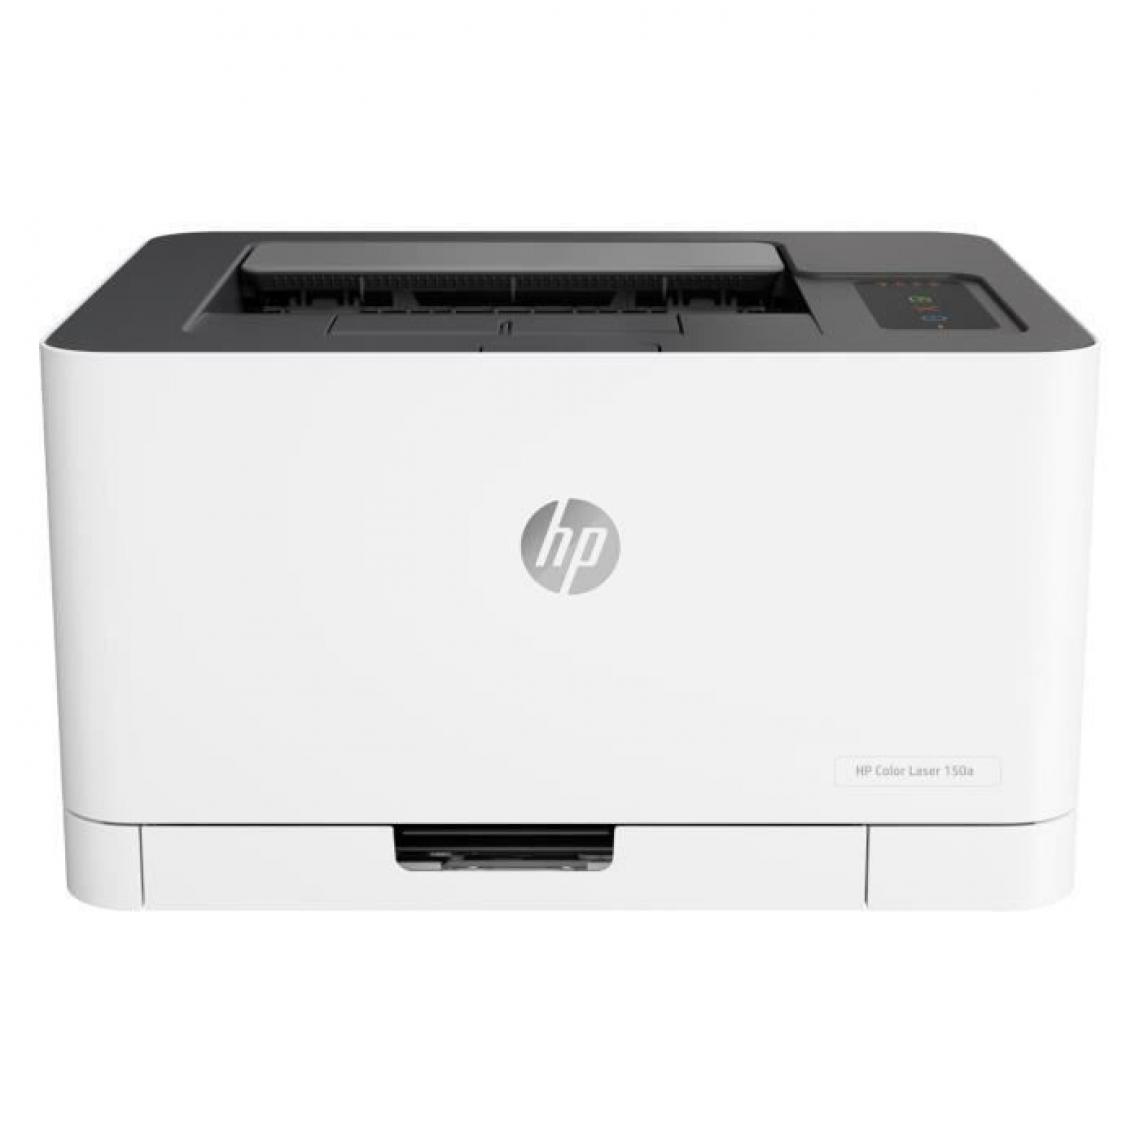 Hp - Imprimante laser couleur HP Color Laser 150a - Imprimante Jet d'encre